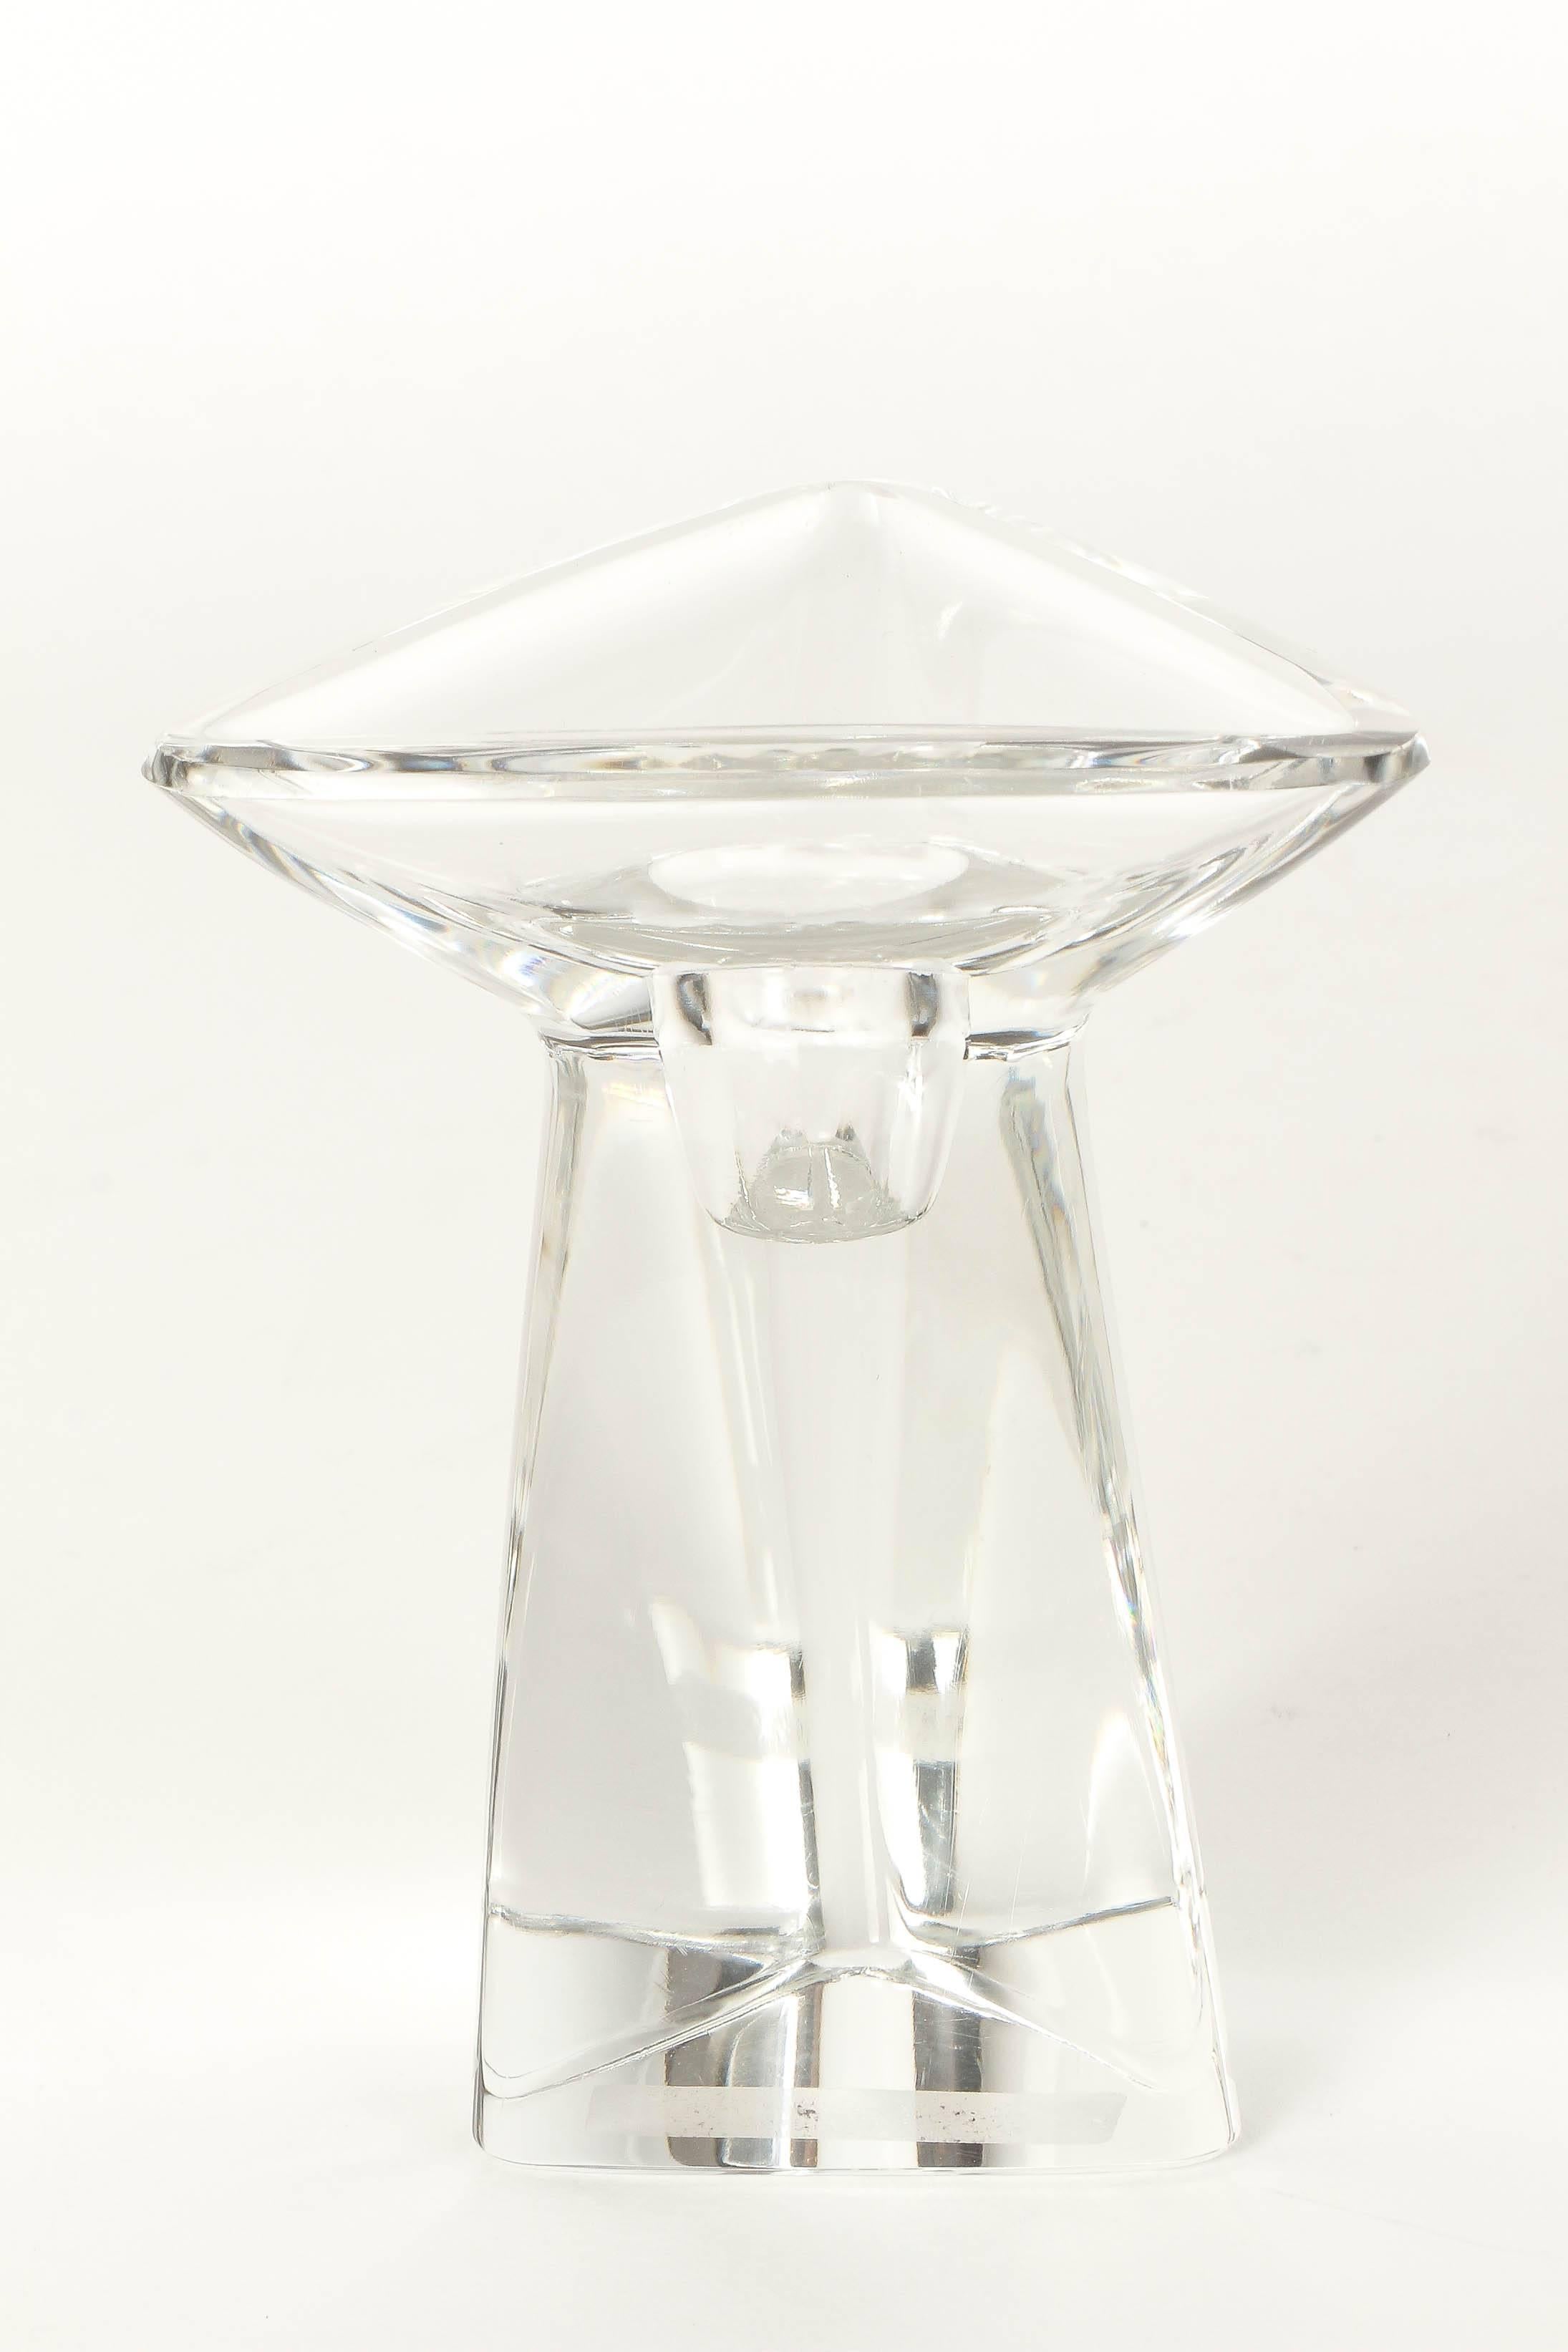 Belgian Peter Muller-Munk Tricorne Crystal Glass Candlesticks for Val St Lambert, 1956